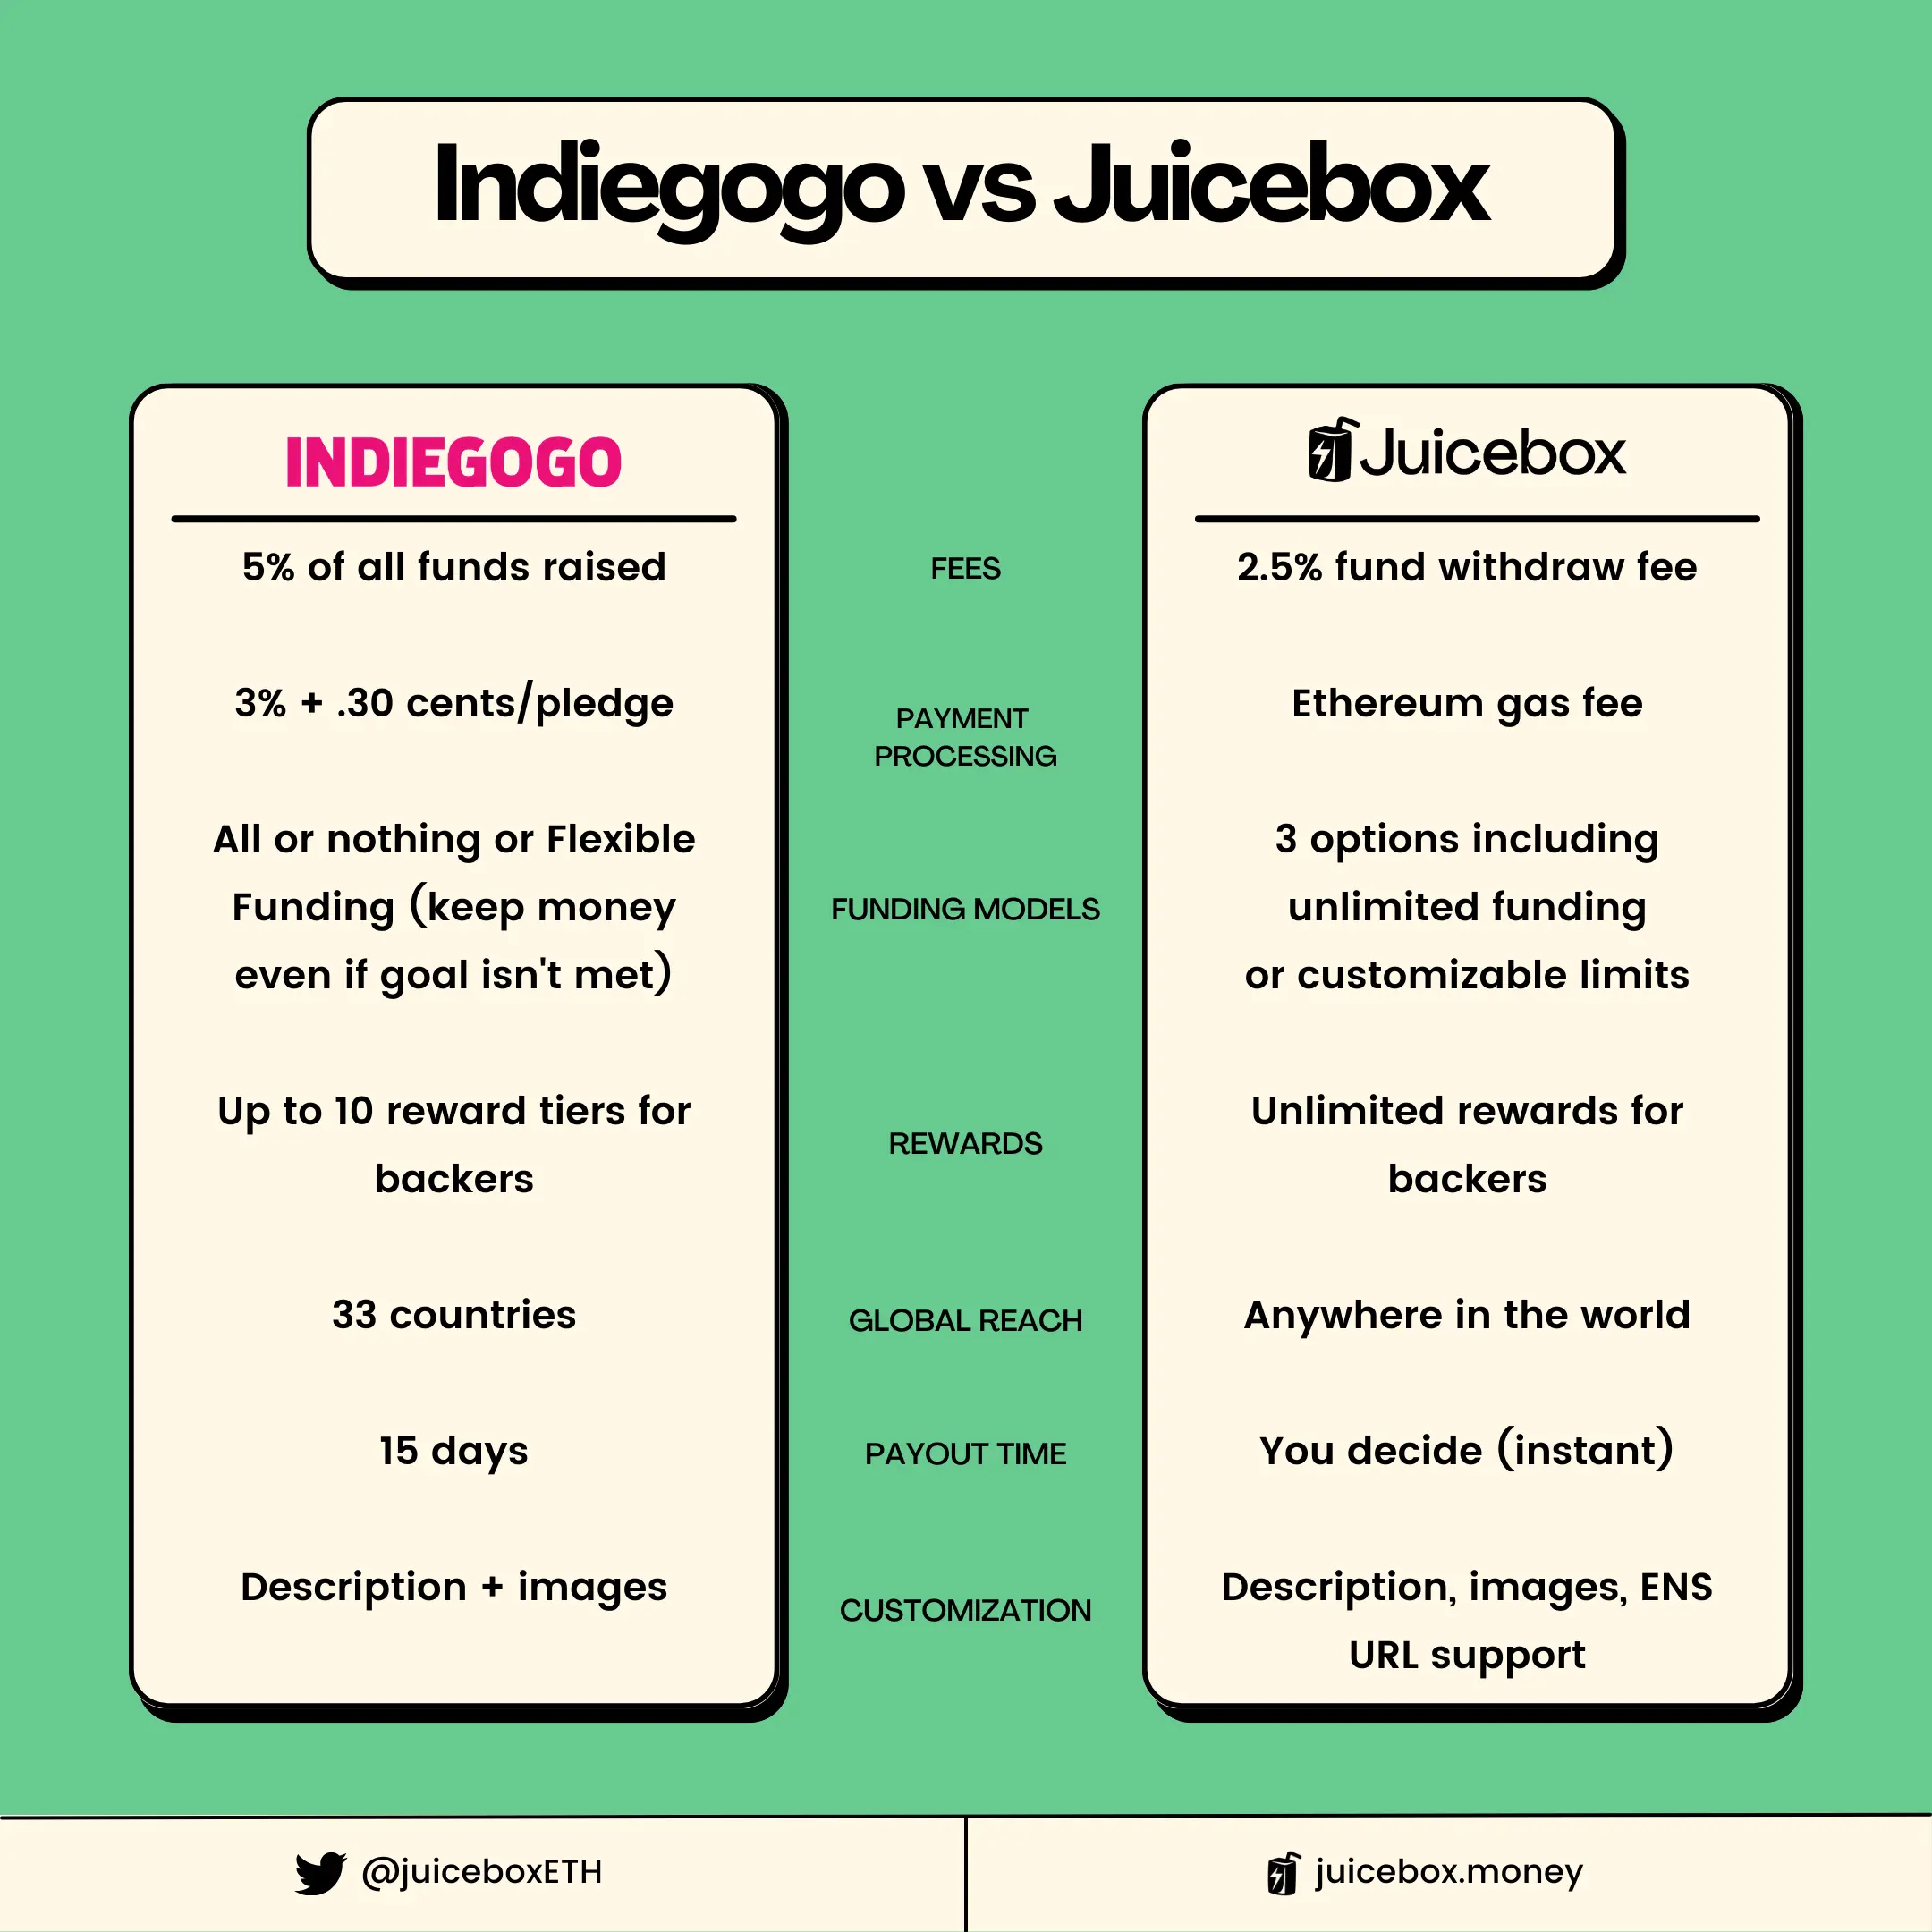 Indiegogo vs Juicebox comparison